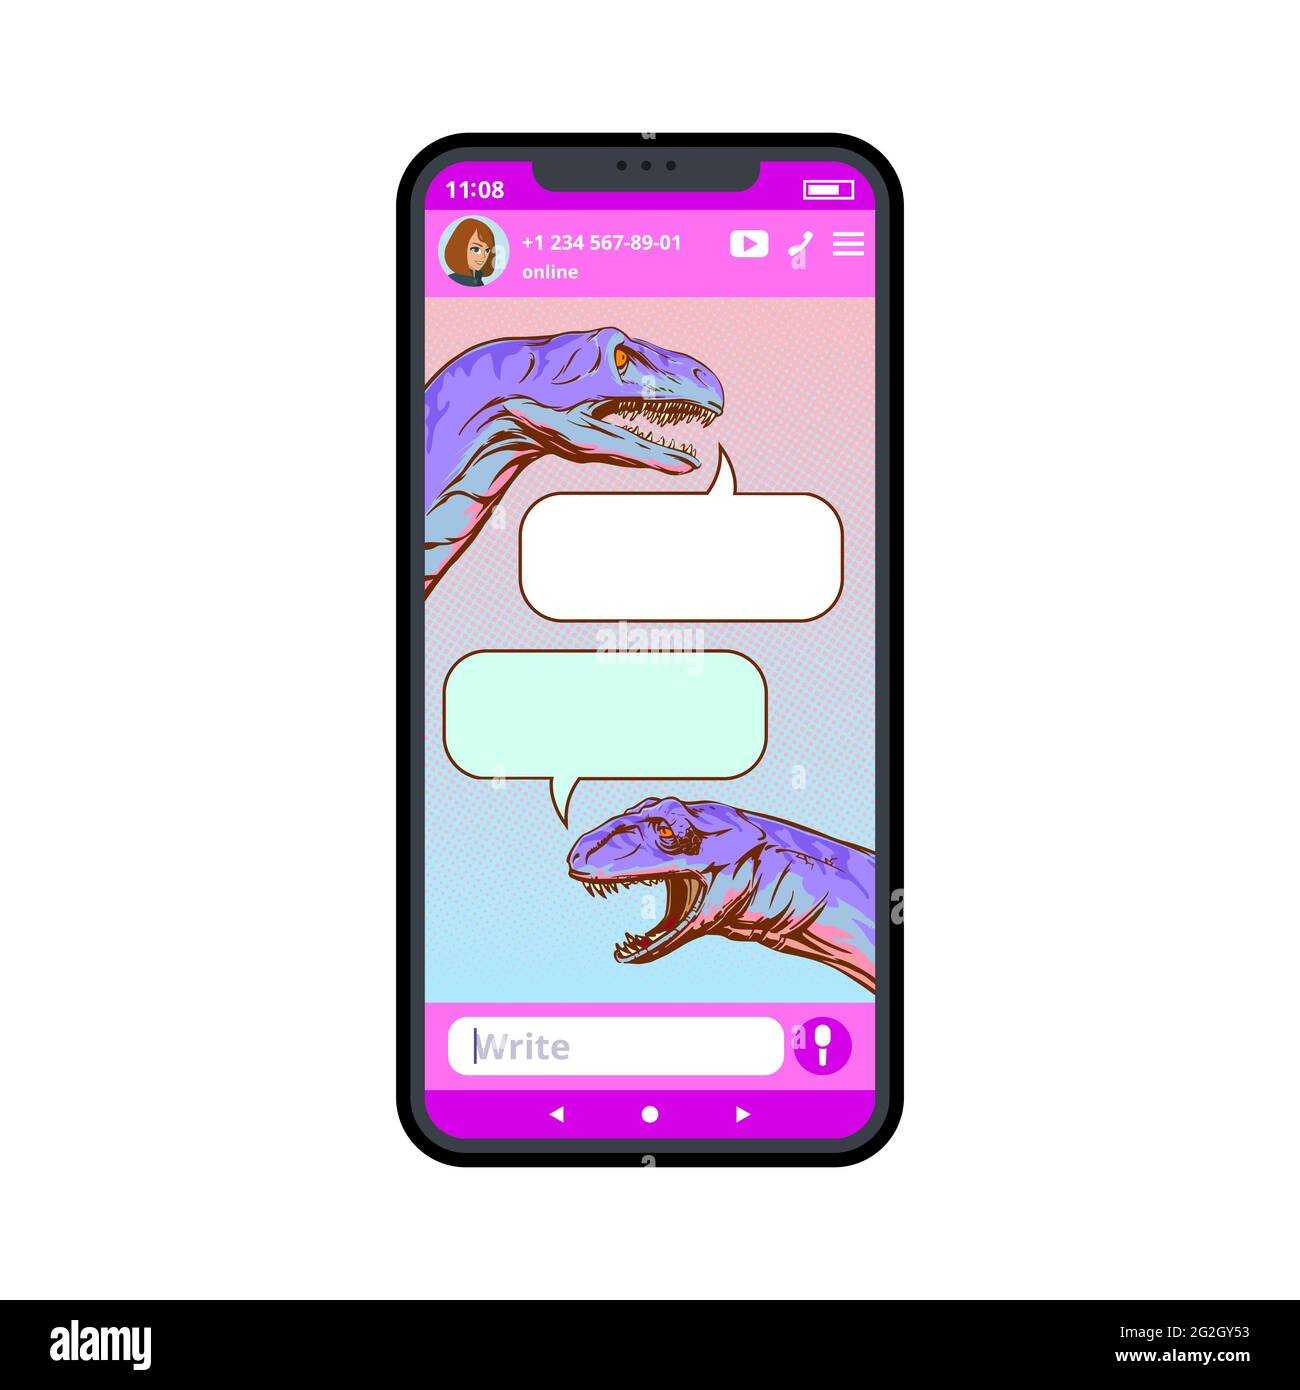 Modello Messenger con dinosauri disegnati in dialogo. Pop art style.illustrazione vettoriale. Illustrazione Vettoriale